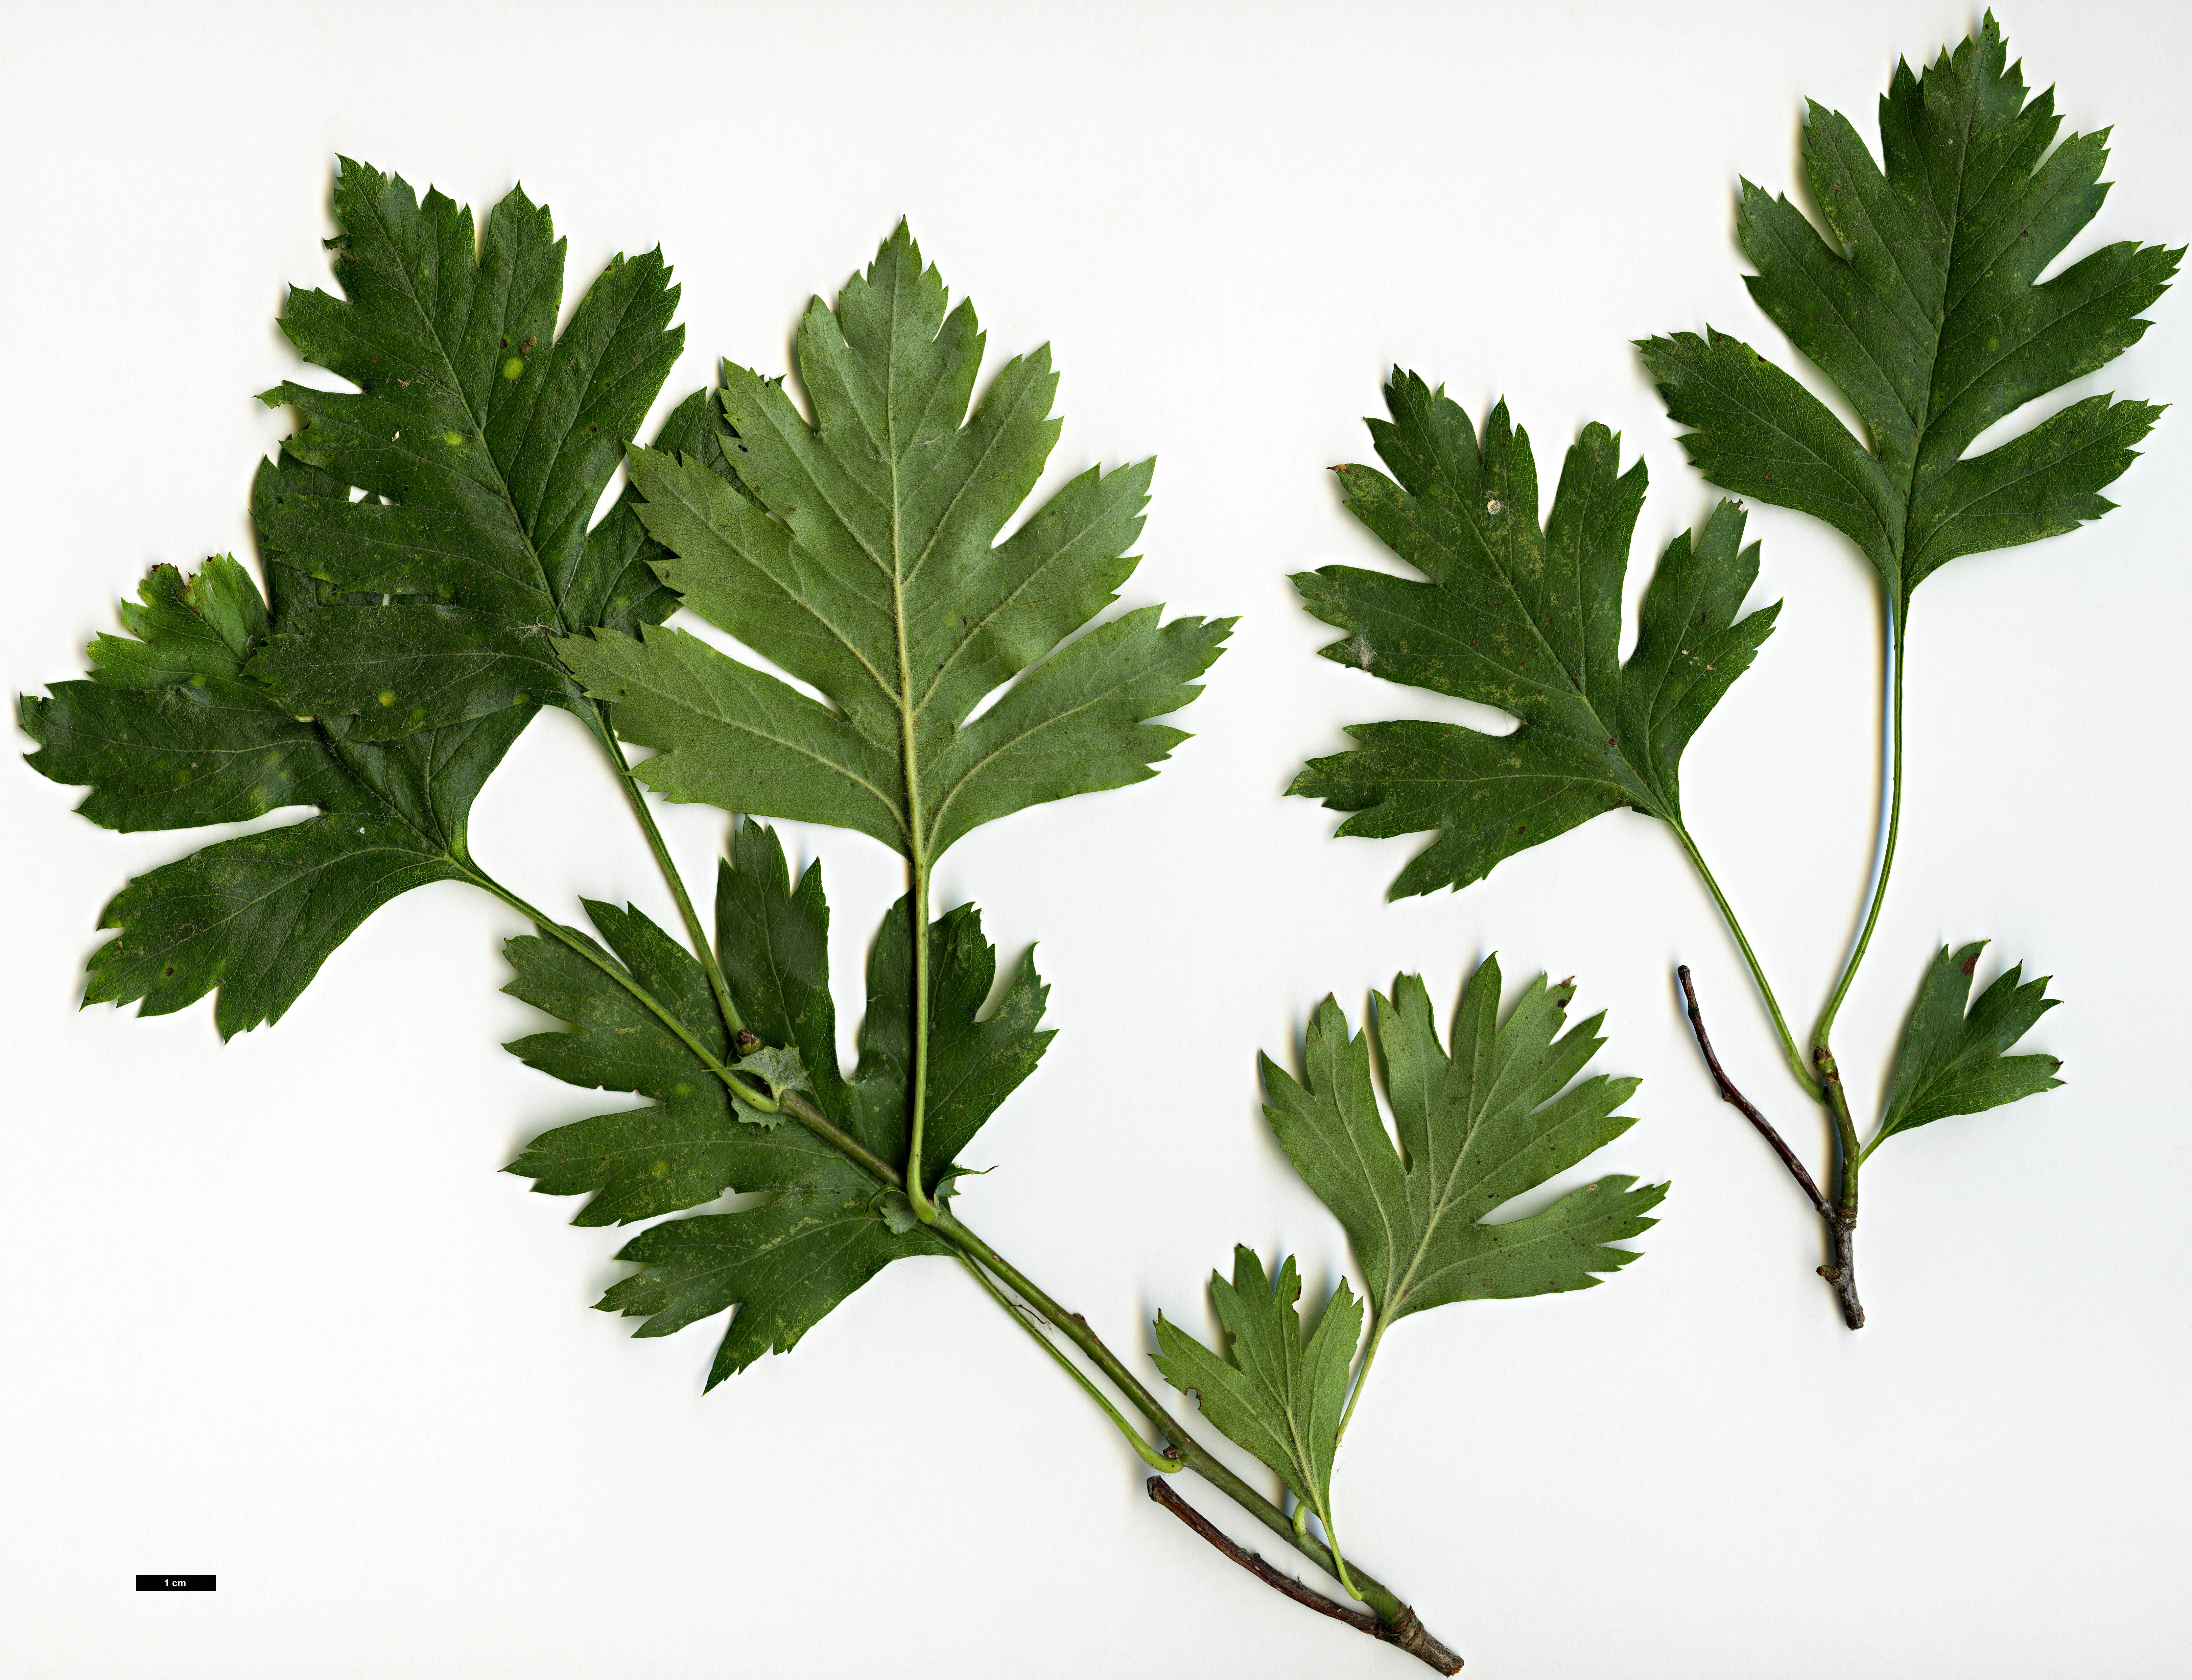 High resolution image: Family: Rosaceae - Genus: Crataegus - Taxon: ×dsungarica (C.altaica × C.songorica)